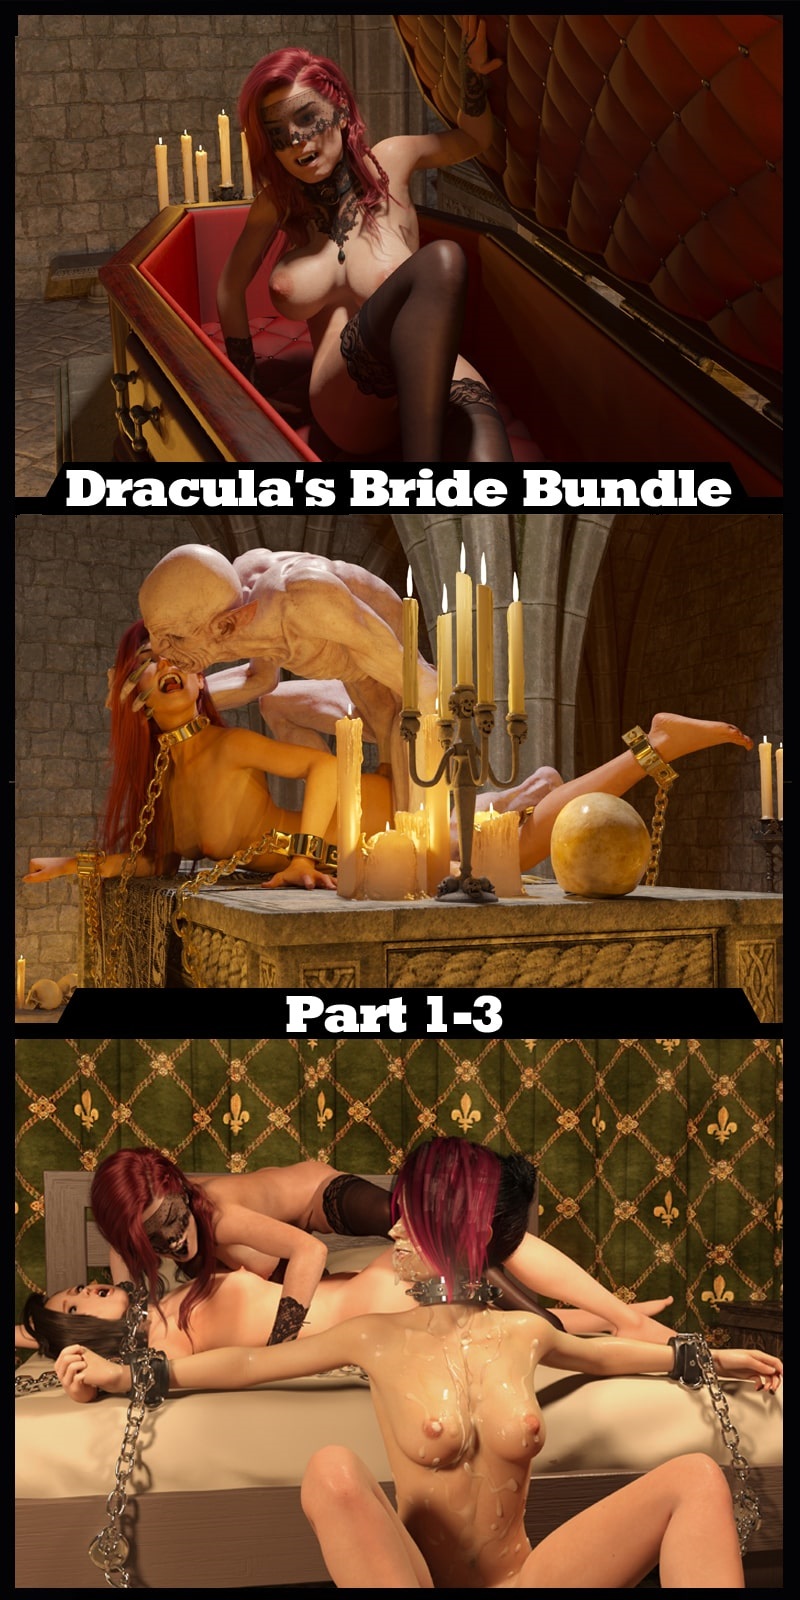 Dracula's Bride Bundle Part 1-3